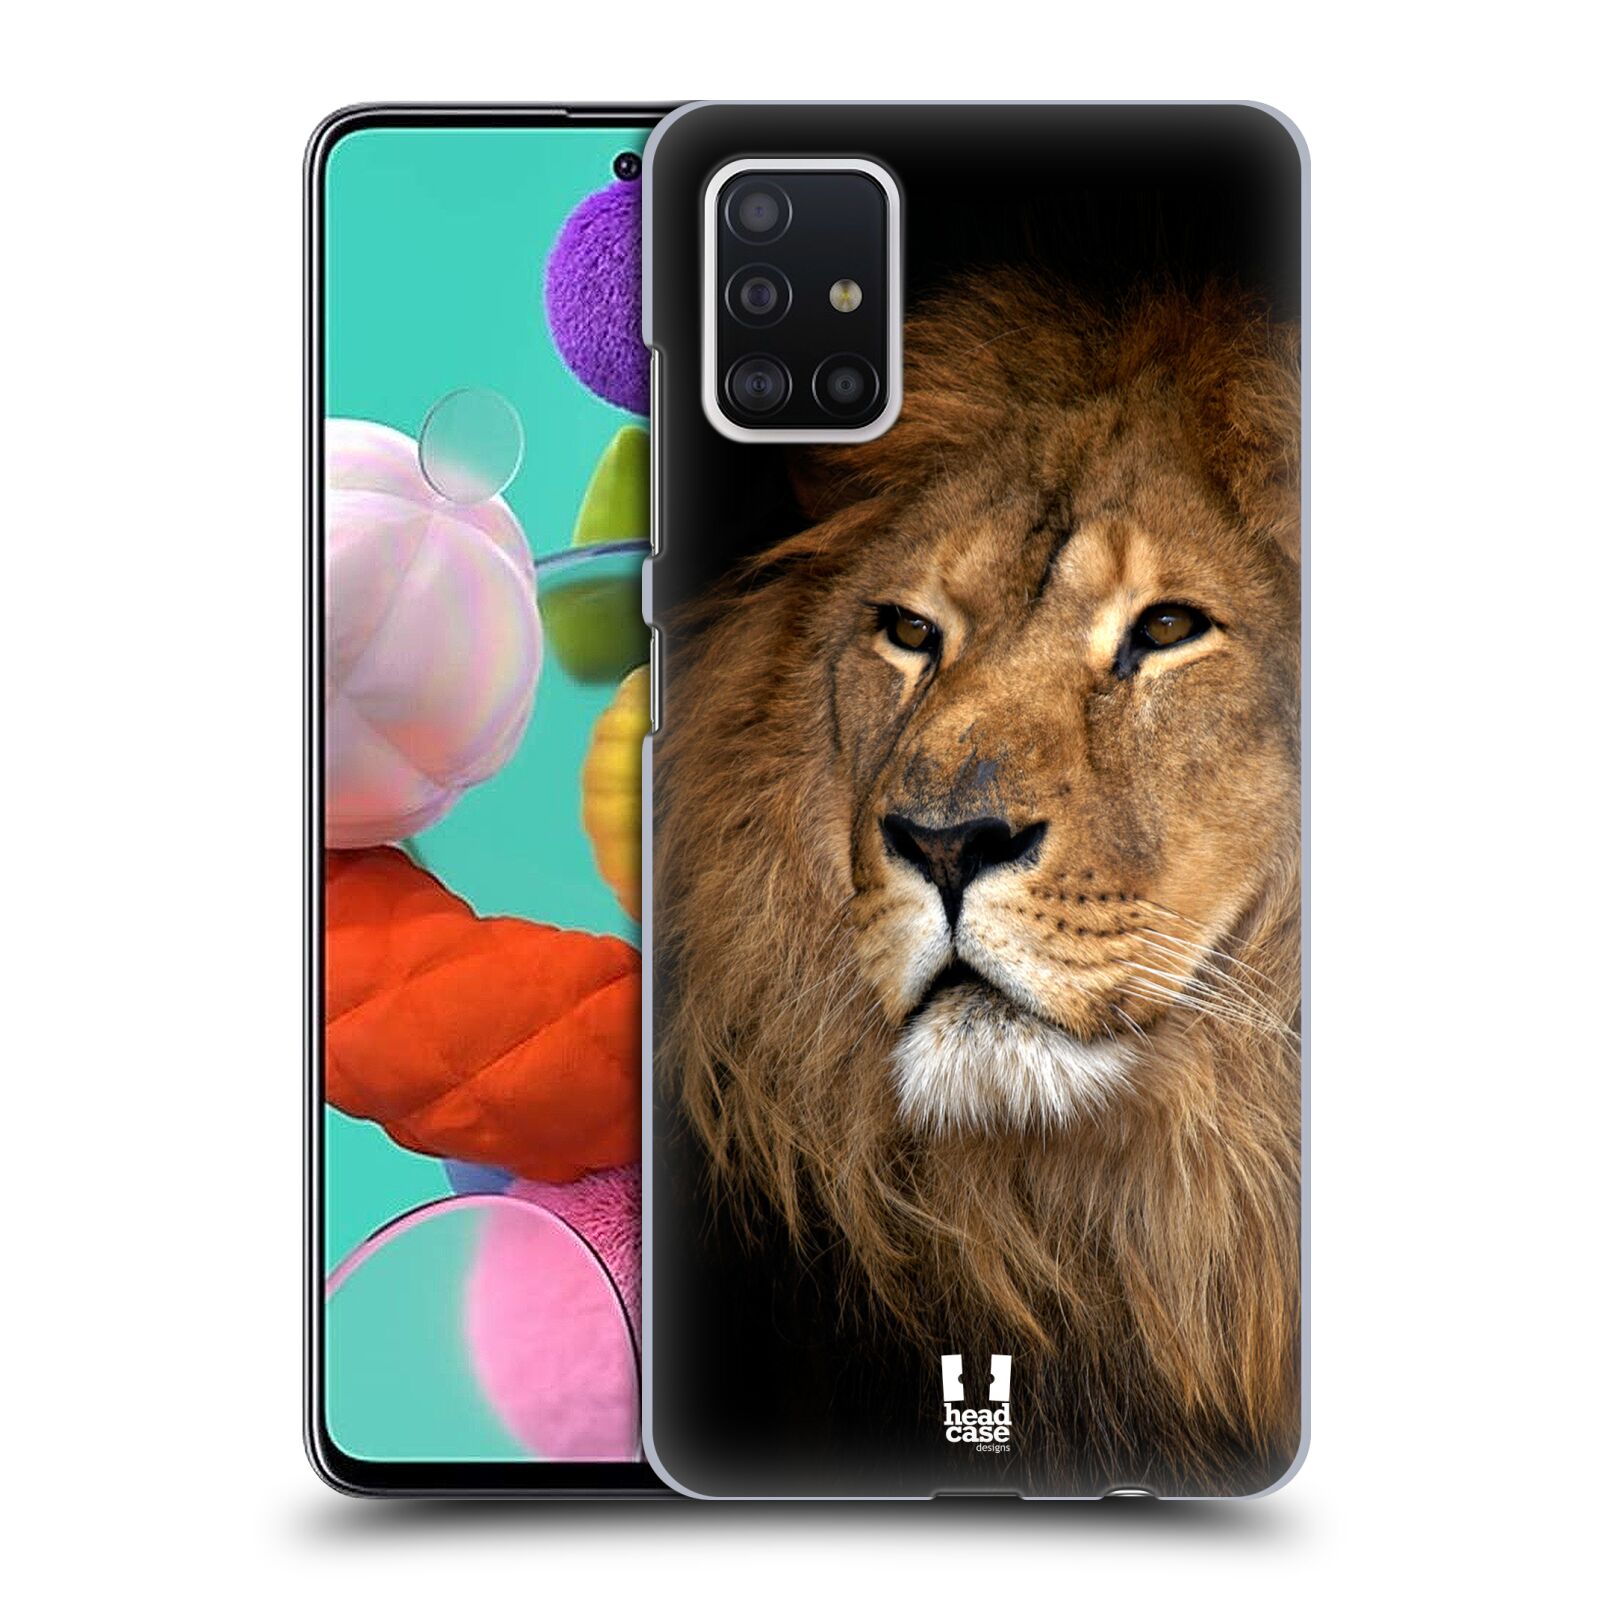 Zadní obal pro mobil Samsung Galaxy A51 - HEAD CASE - Svět zvířat král zvířat Lev